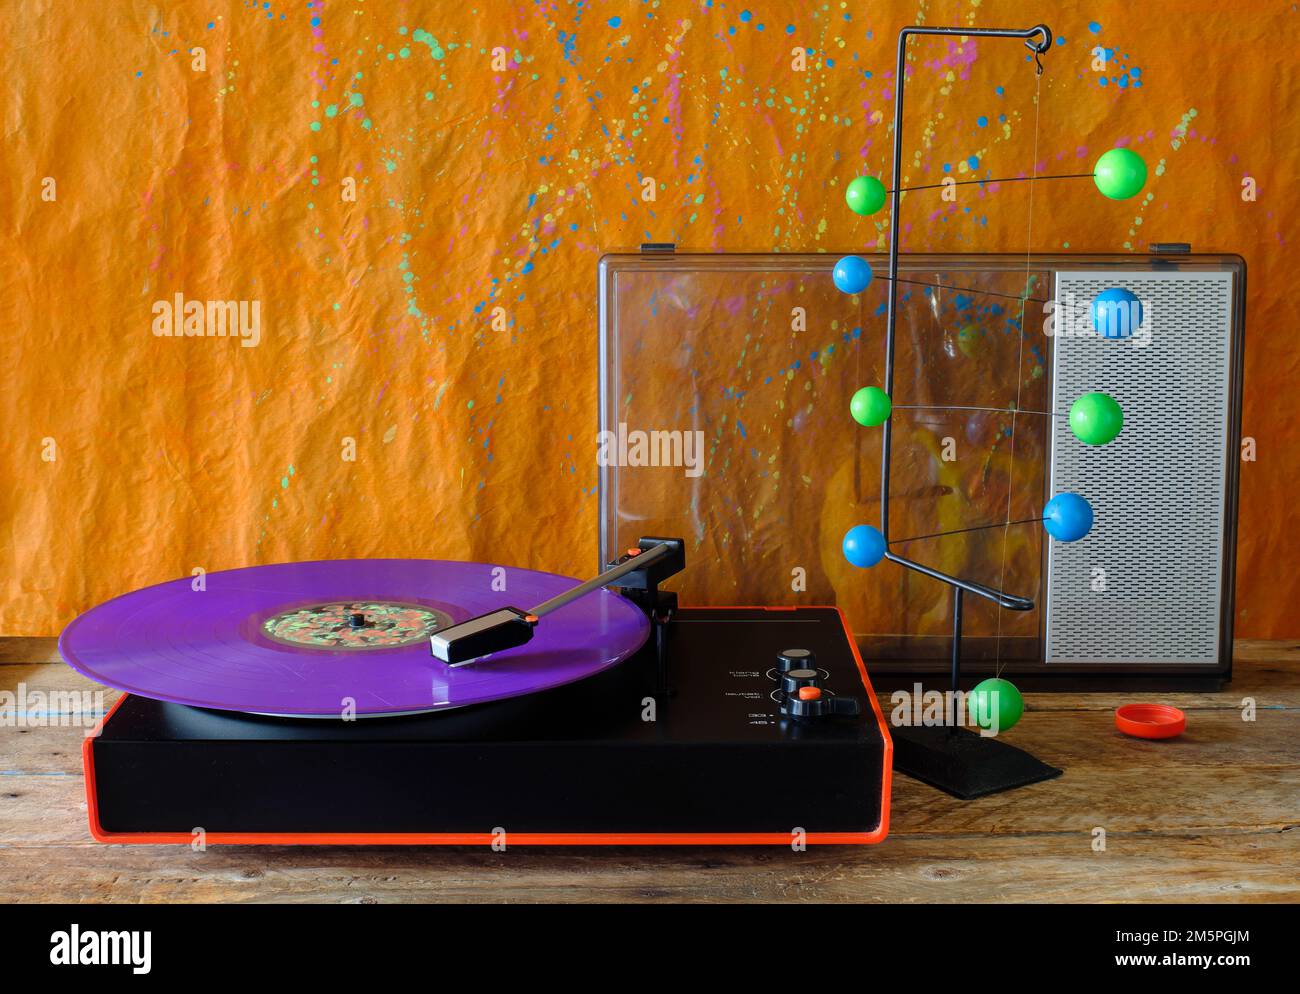 Klassischer Plattenspieler mit violettem Schallplattenspieler, Lautsprecher und Pop-Art-Objekt Stockfoto